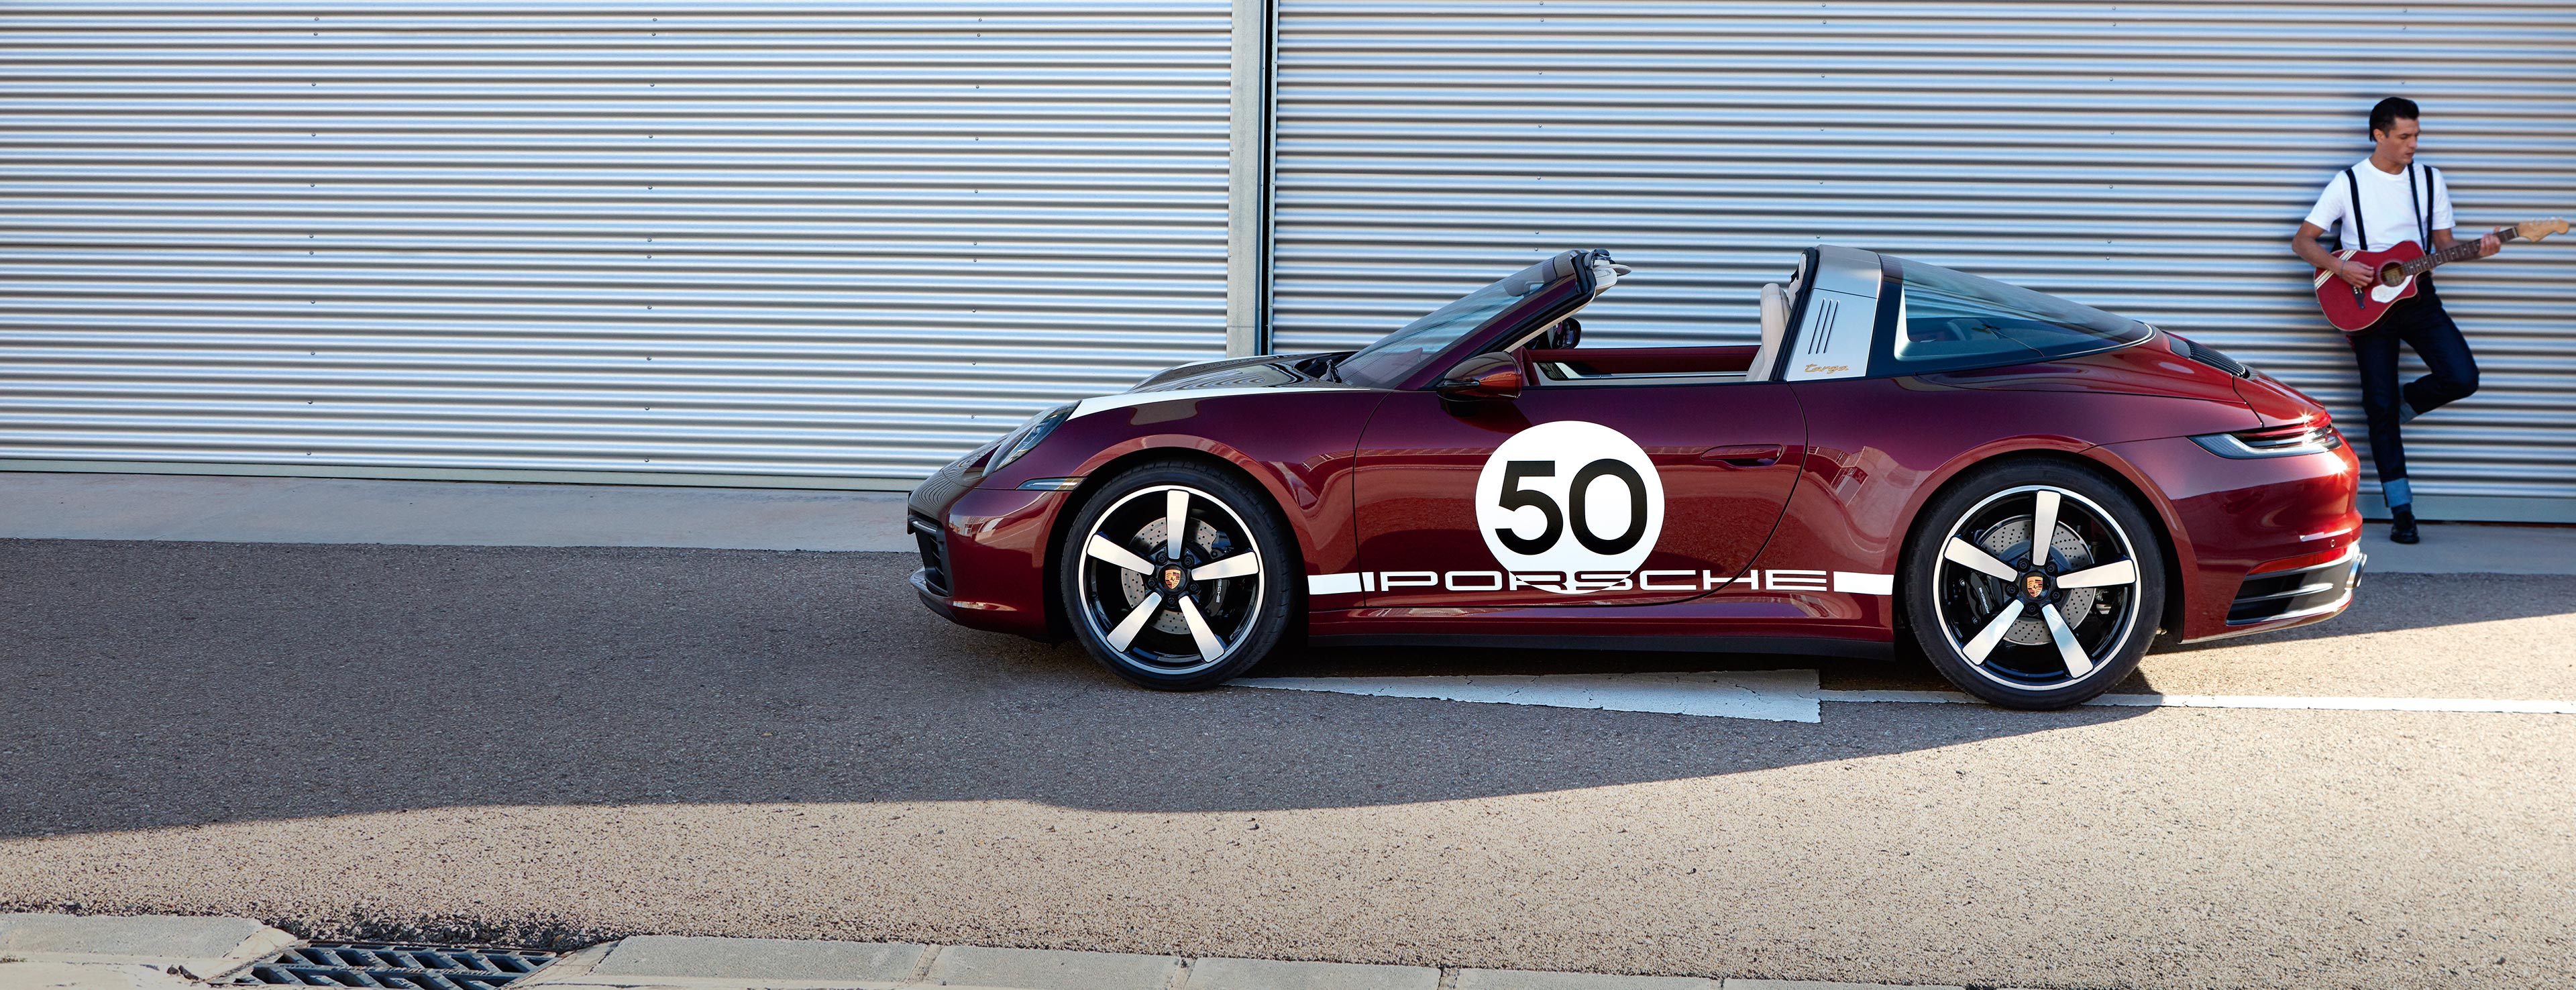 Porsche 911 Targa 4S Heritage Design Edition - Porsche AG